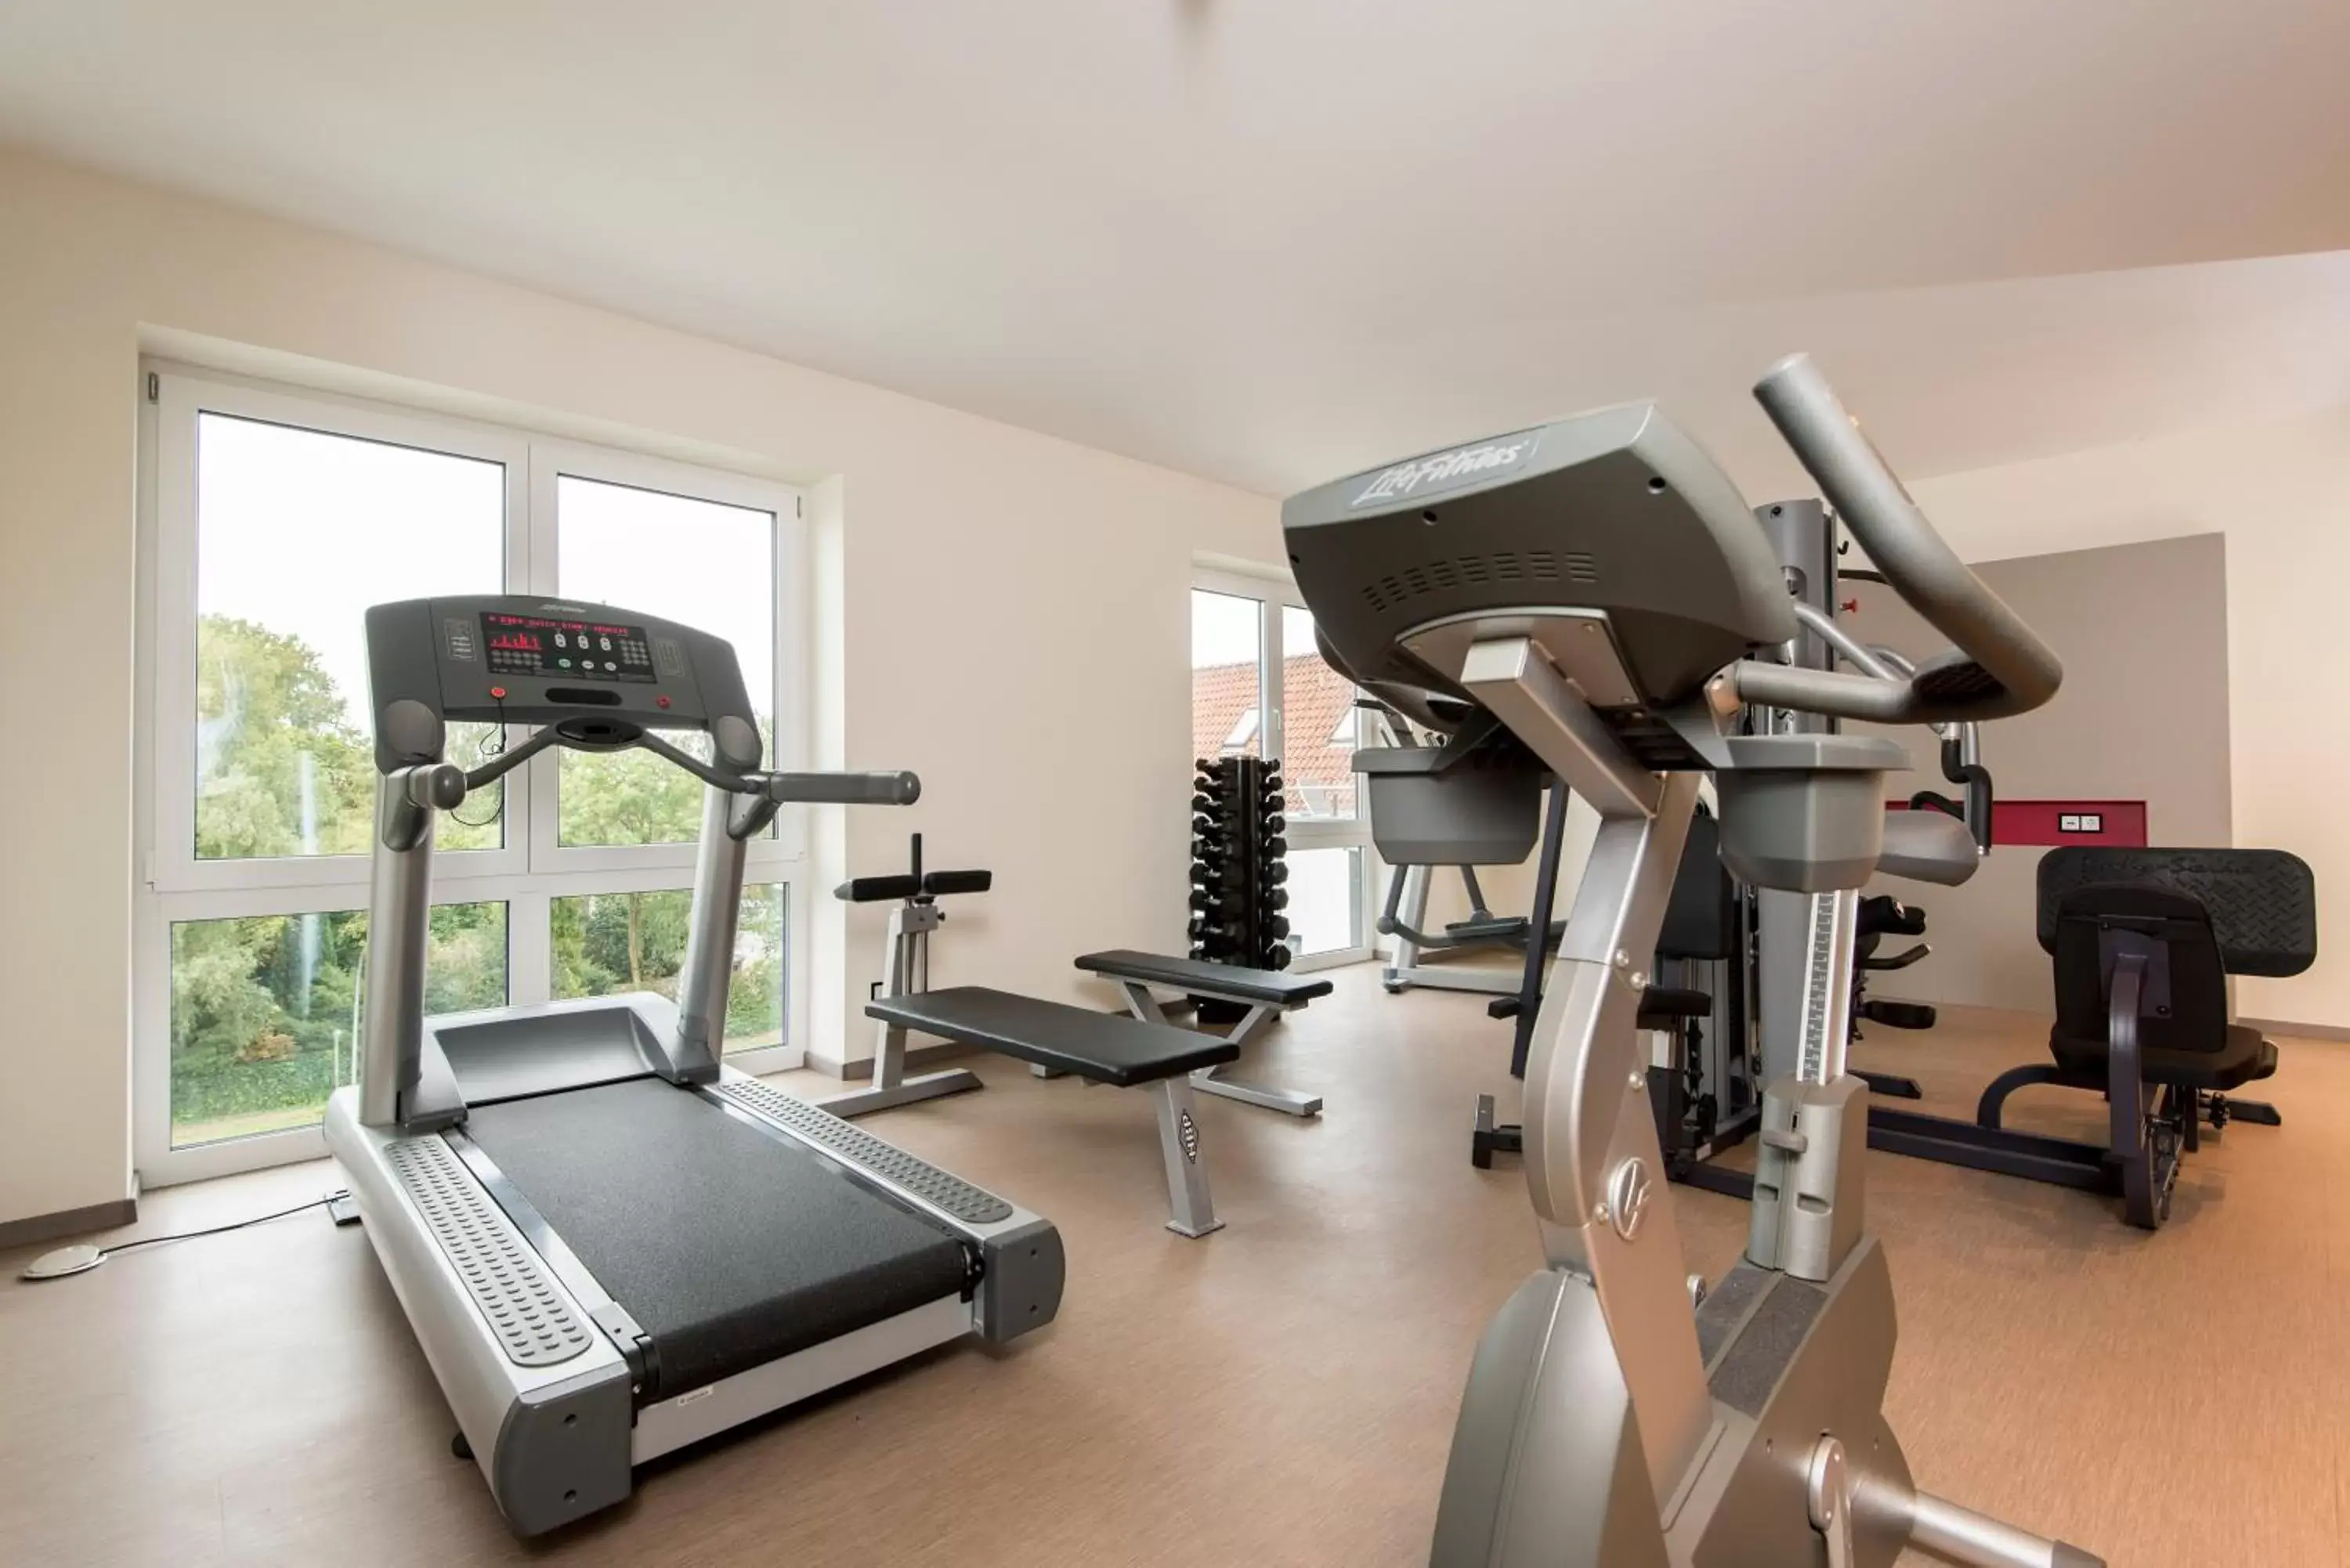 Fitness centre/facilities, Fitness Center/Facilities in Looken Inn